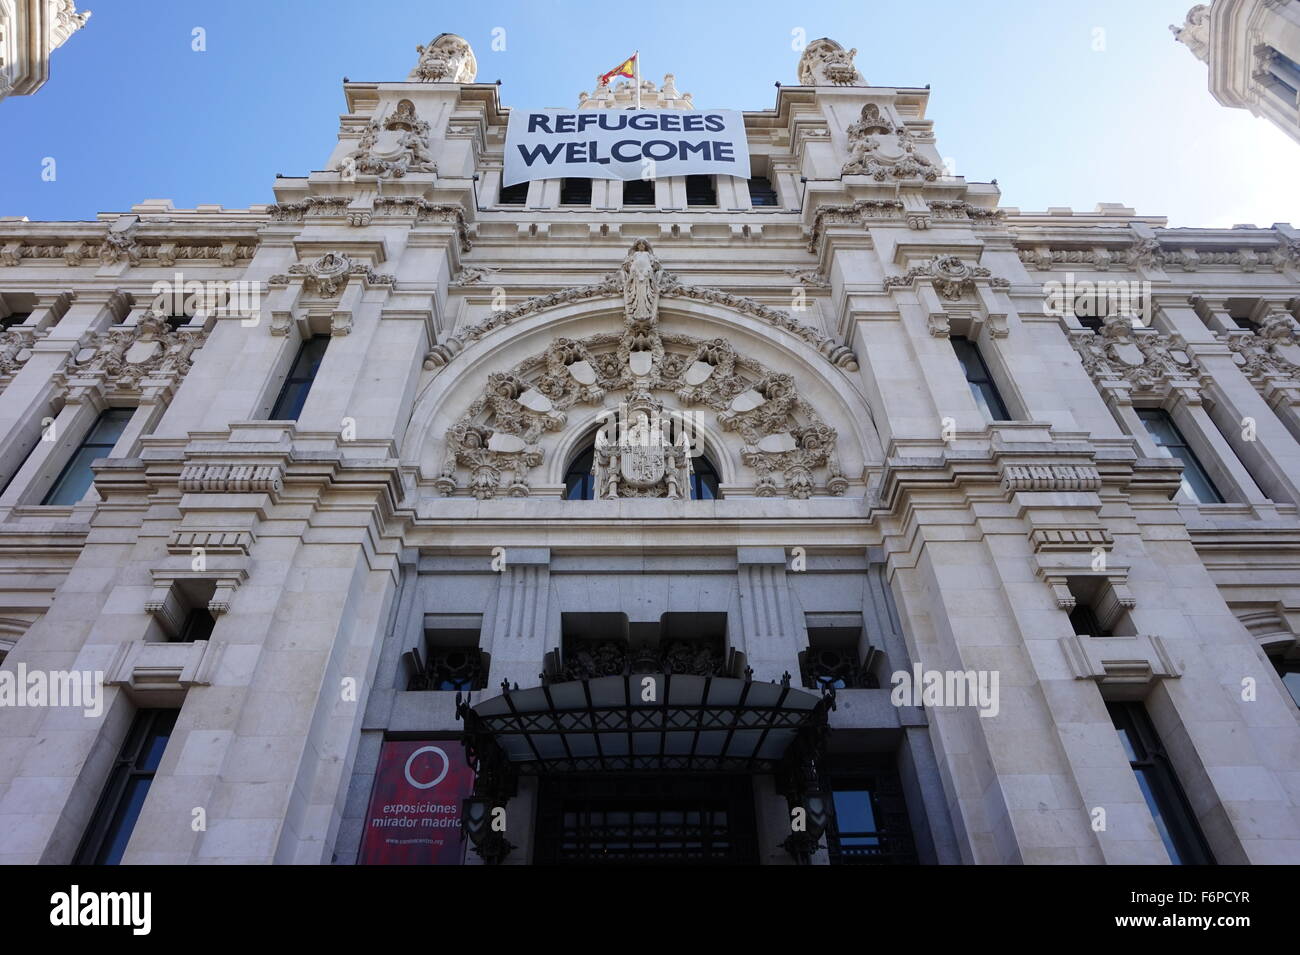 Cybele Palast, Madrid, Spanien: Flüchtlinge Willkommen Stockfoto